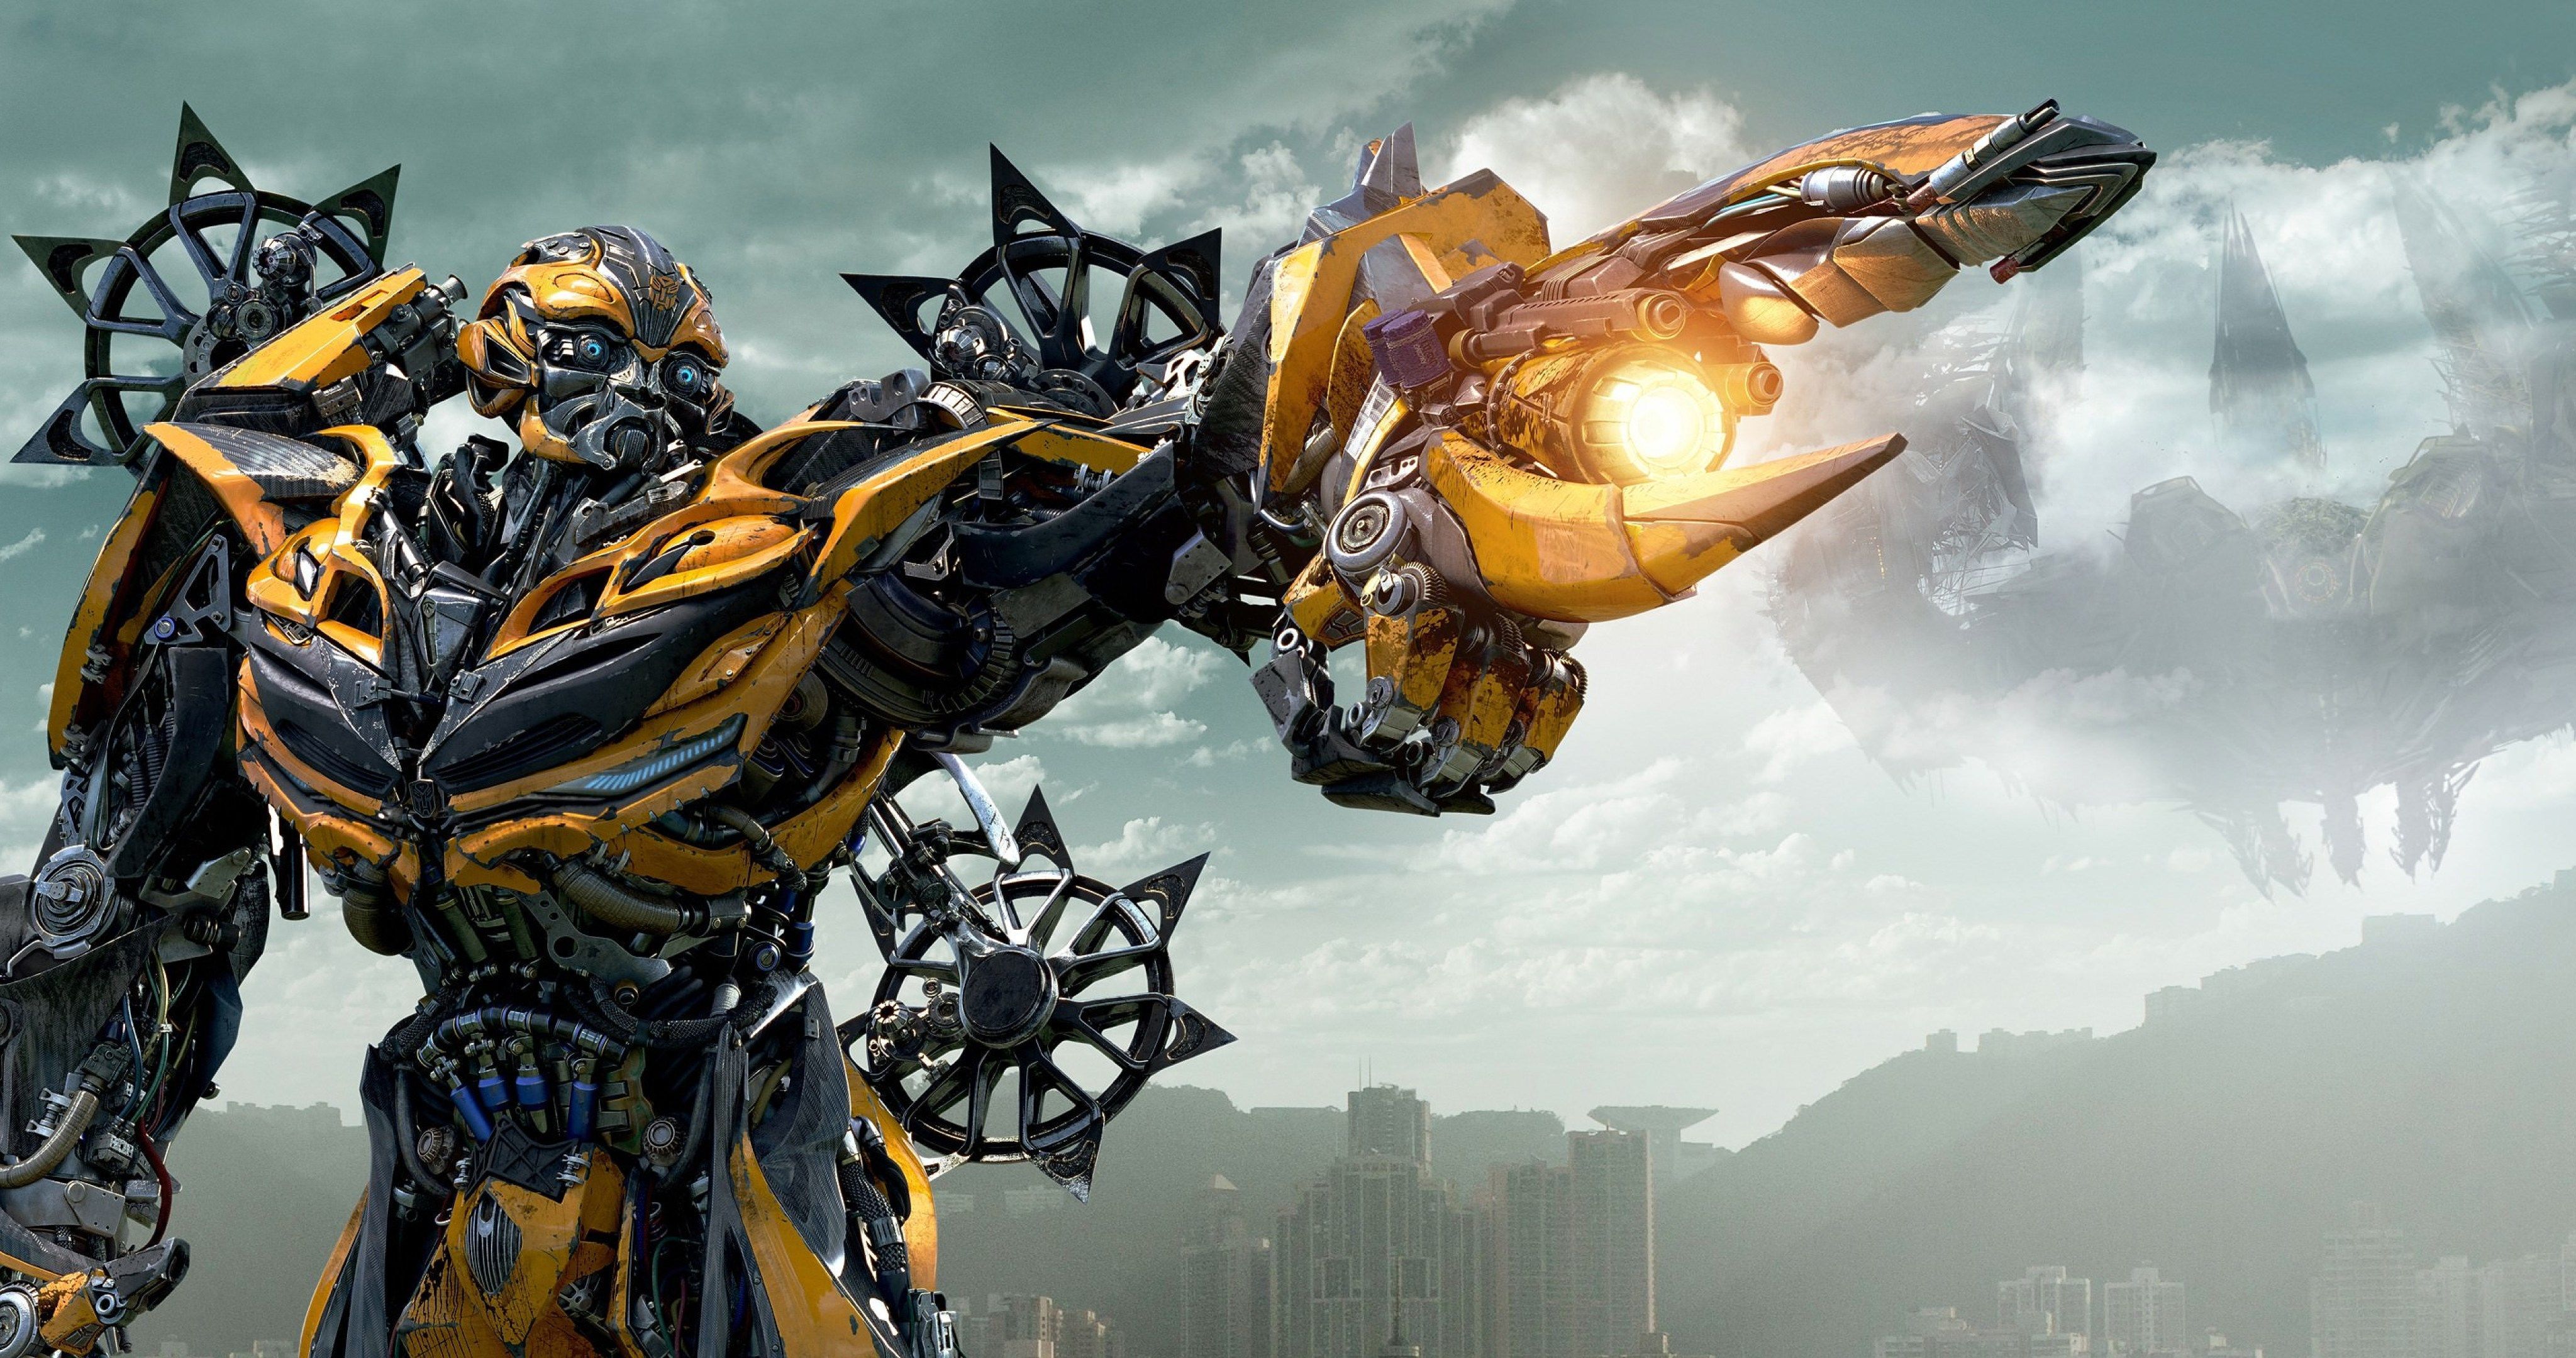 Nền tảng điện ảnh nổi tiếng của các robot dị biệt sẽ khiến trái tim bạn loạn nhịp khi khám phá bức hình nền Transformers độc đáo này. Hãy để màn hình của bạn trở nên nổi bật hơn với thiết kế đẹp mắt này!